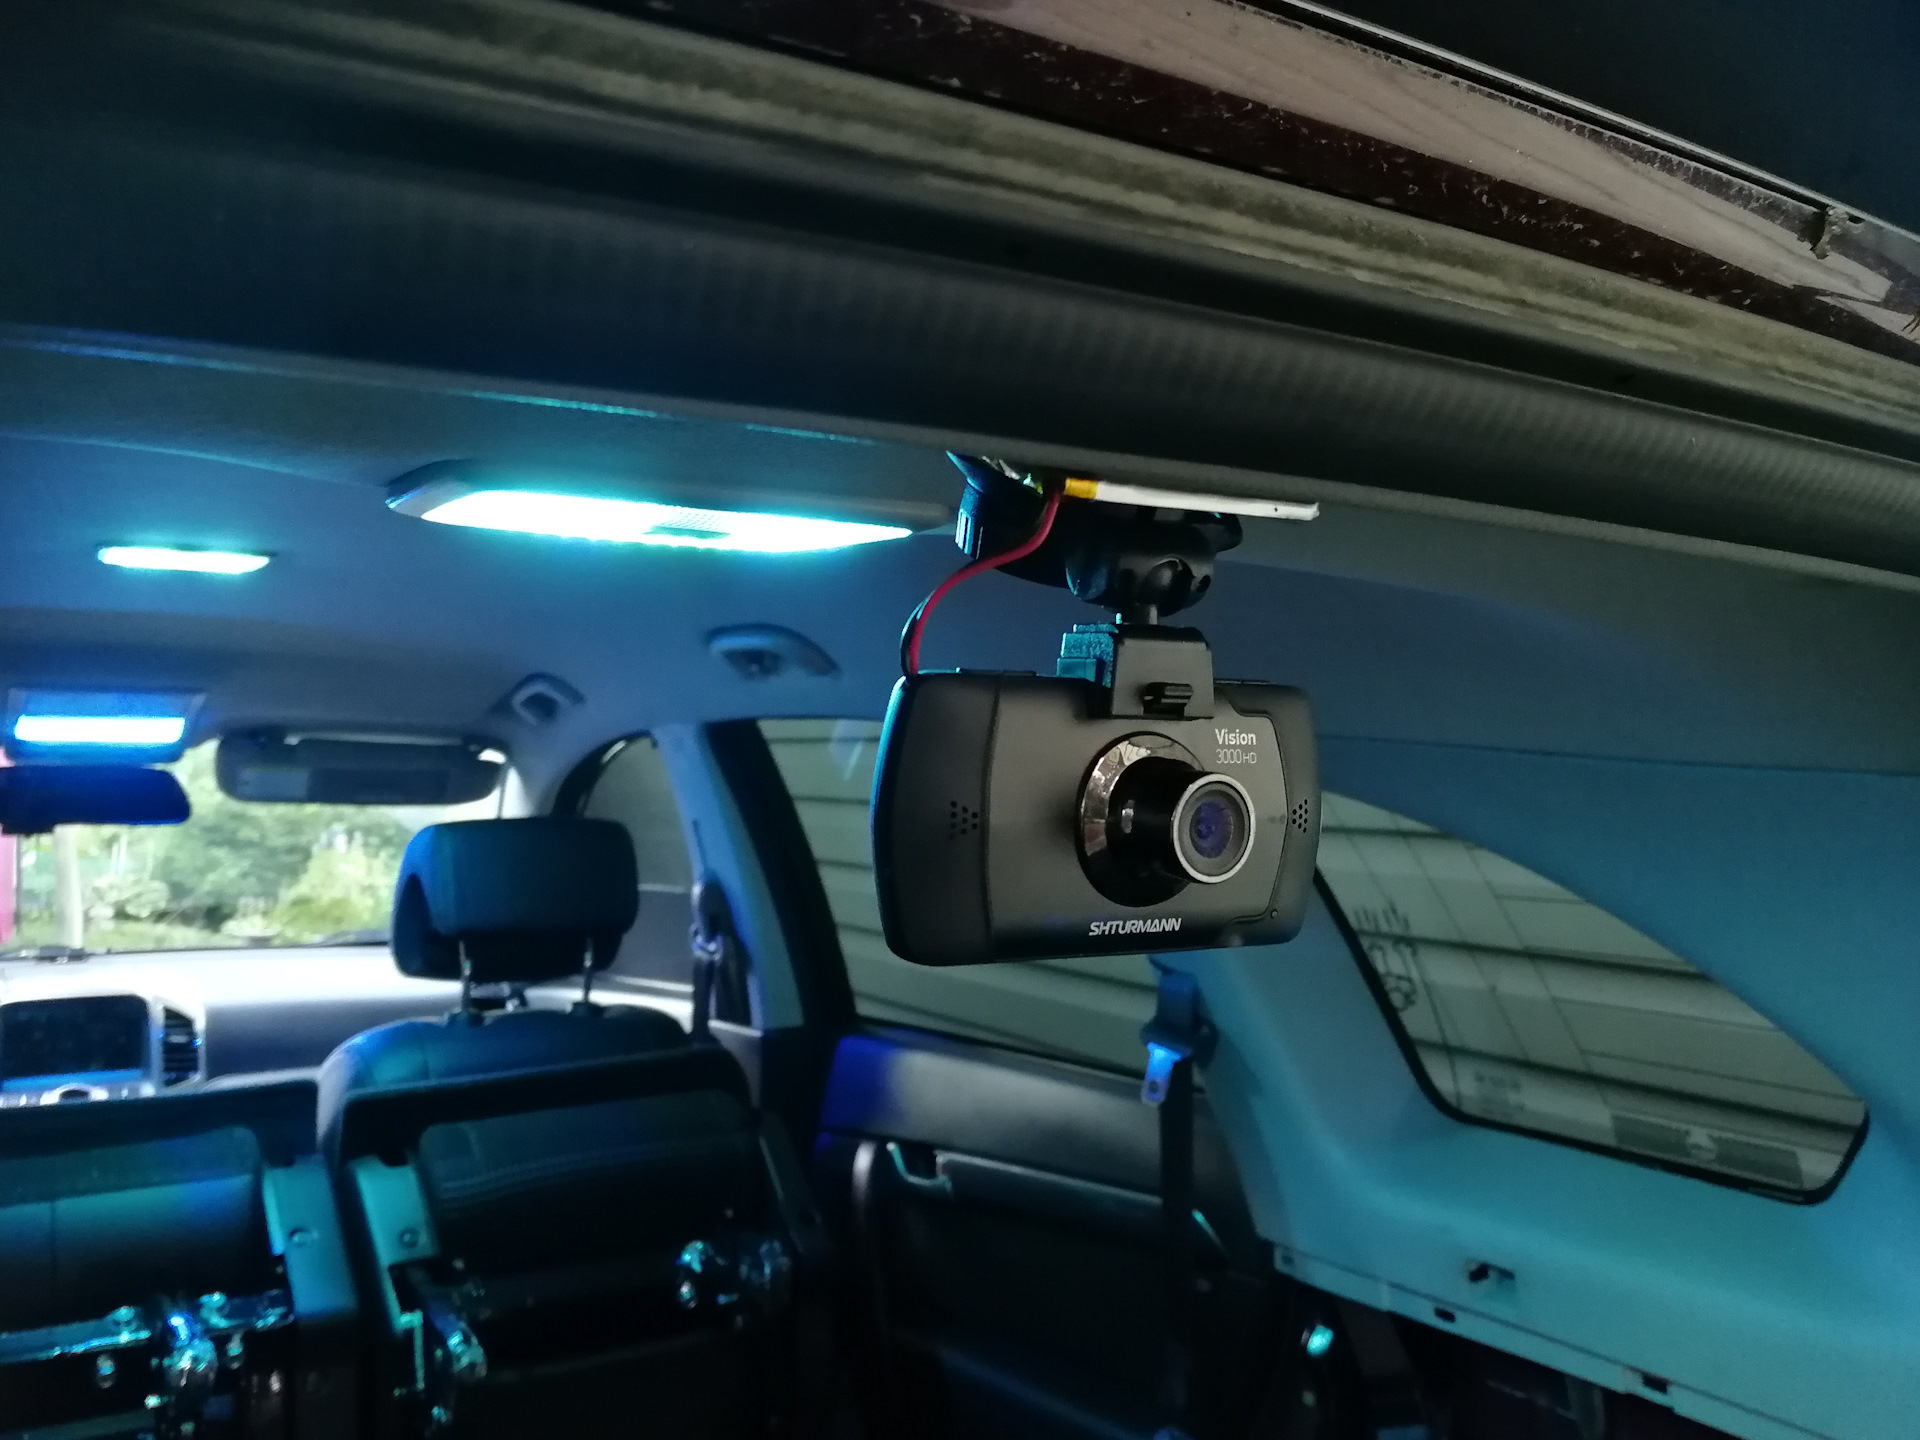 Видеорегистратор снимает внутри машины или снаружи